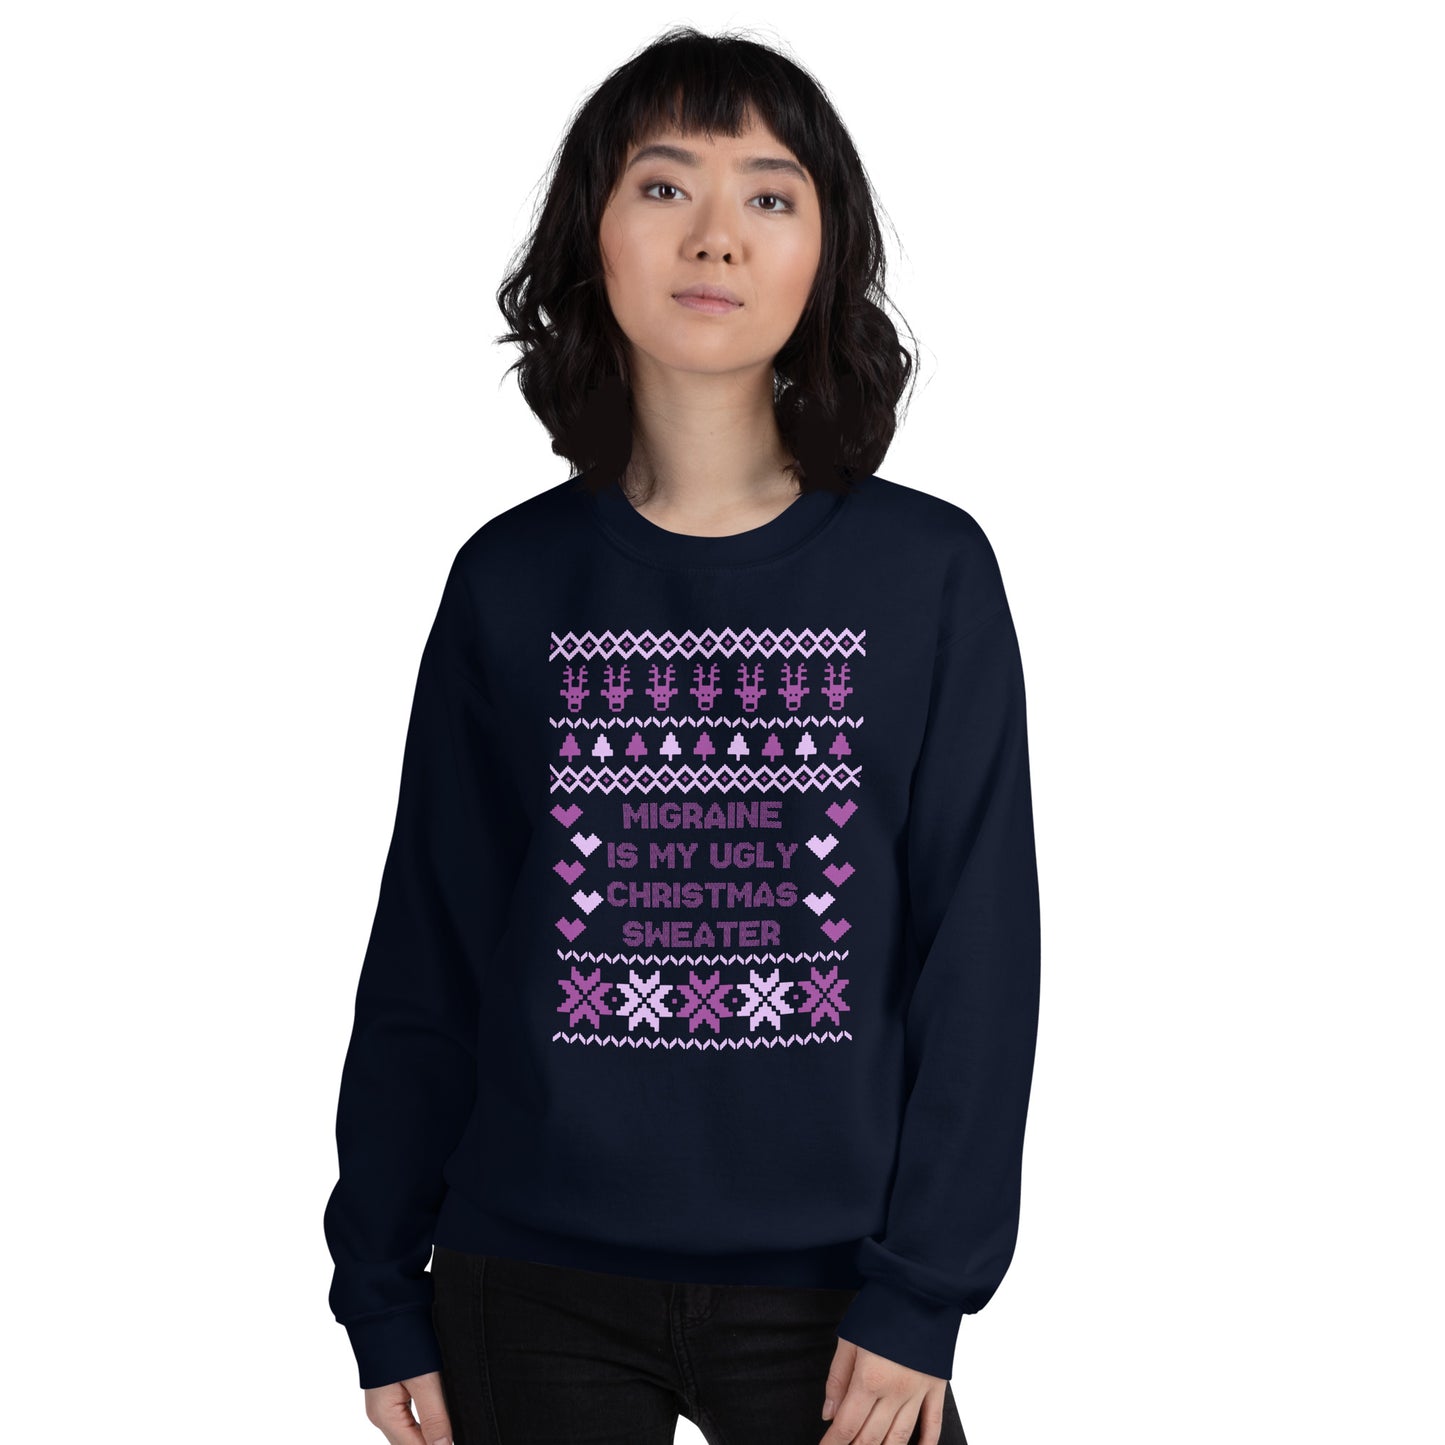 Migraine is My Ugly Christmas Sweater Sweatshirt